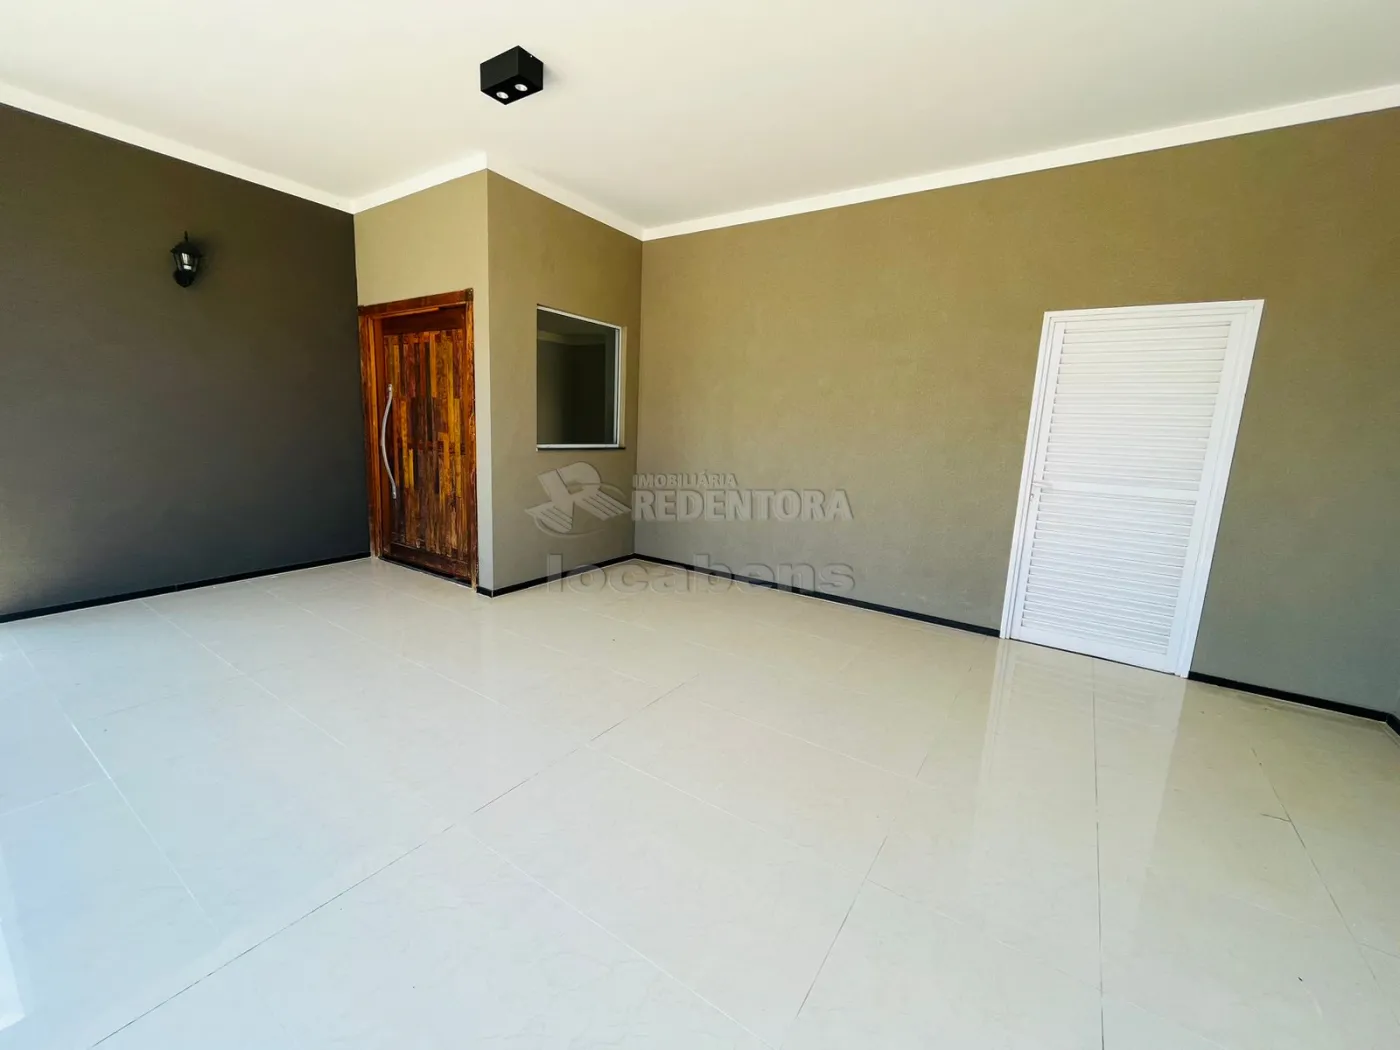 Comprar Casa / Condomínio em Mirassol apenas R$ 860.000,00 - Foto 9